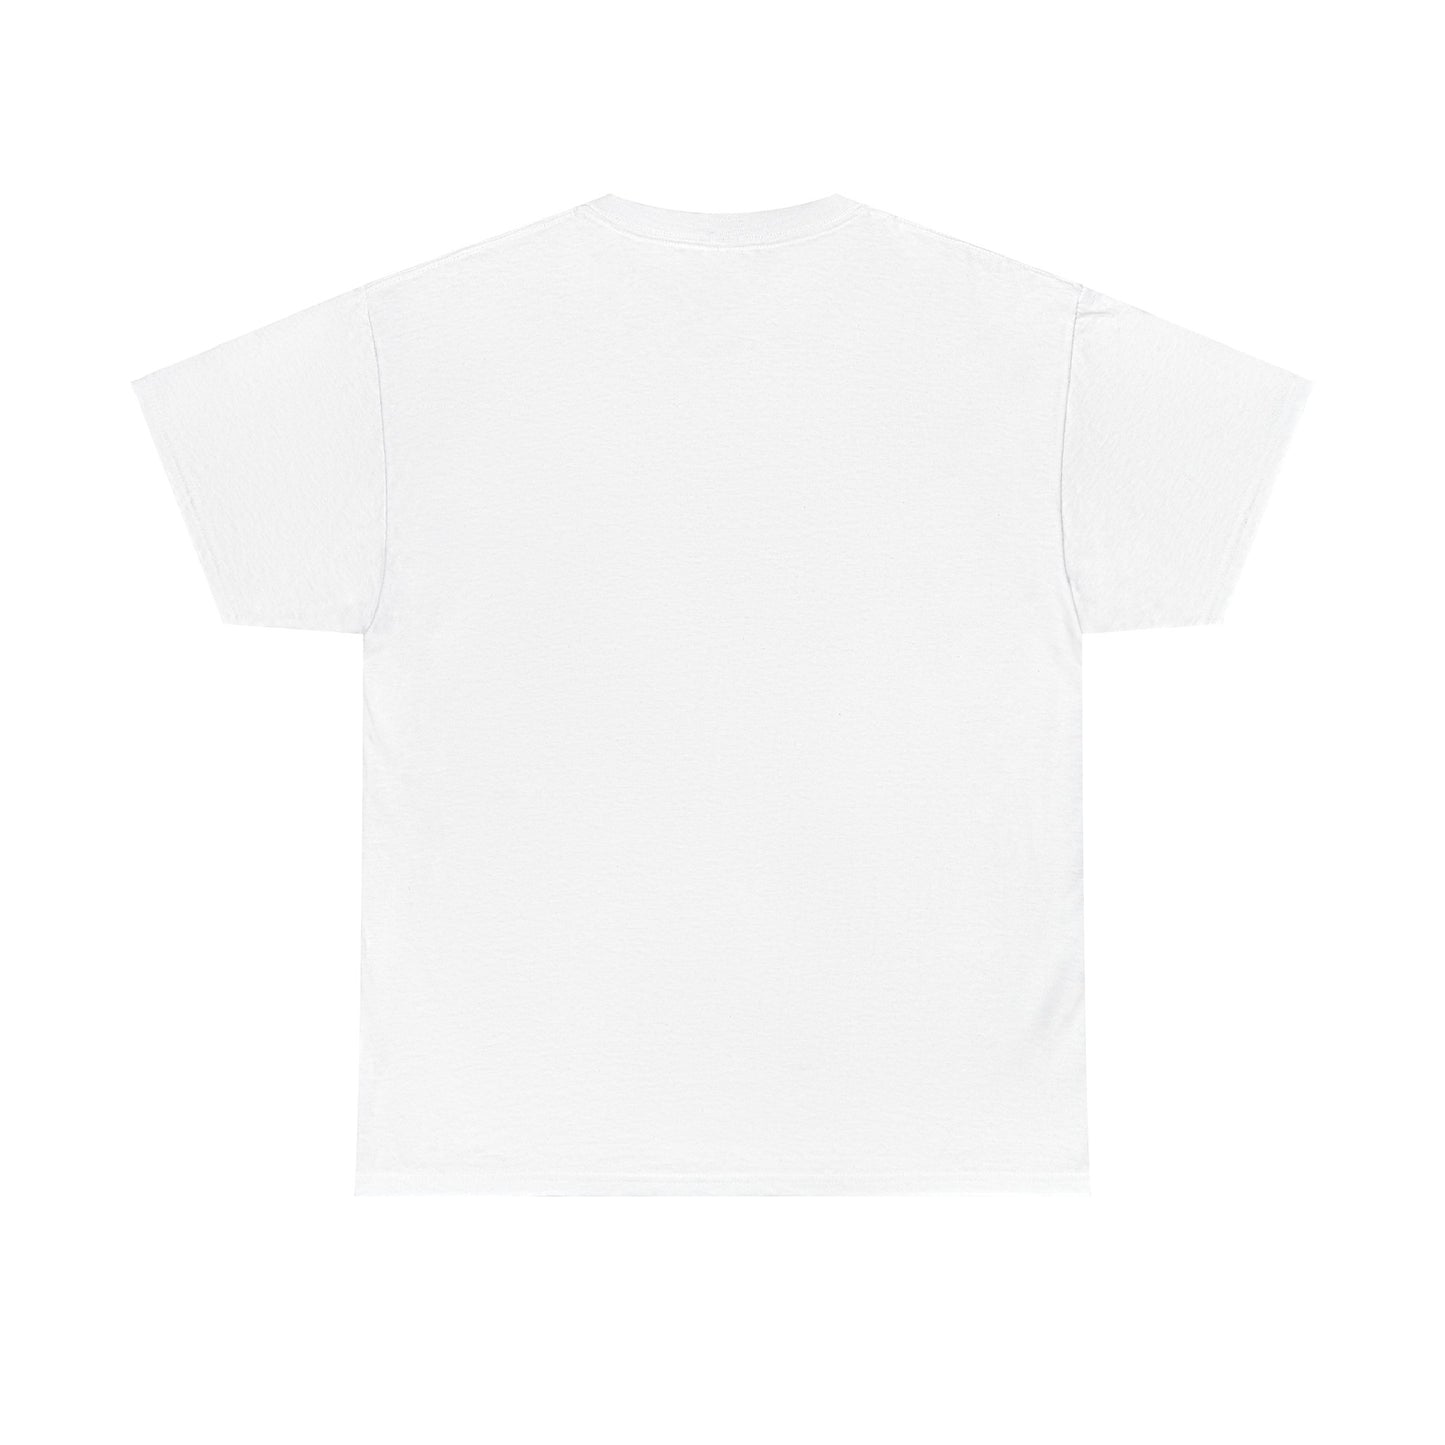 Ho*s Be Lyin T-Shirt